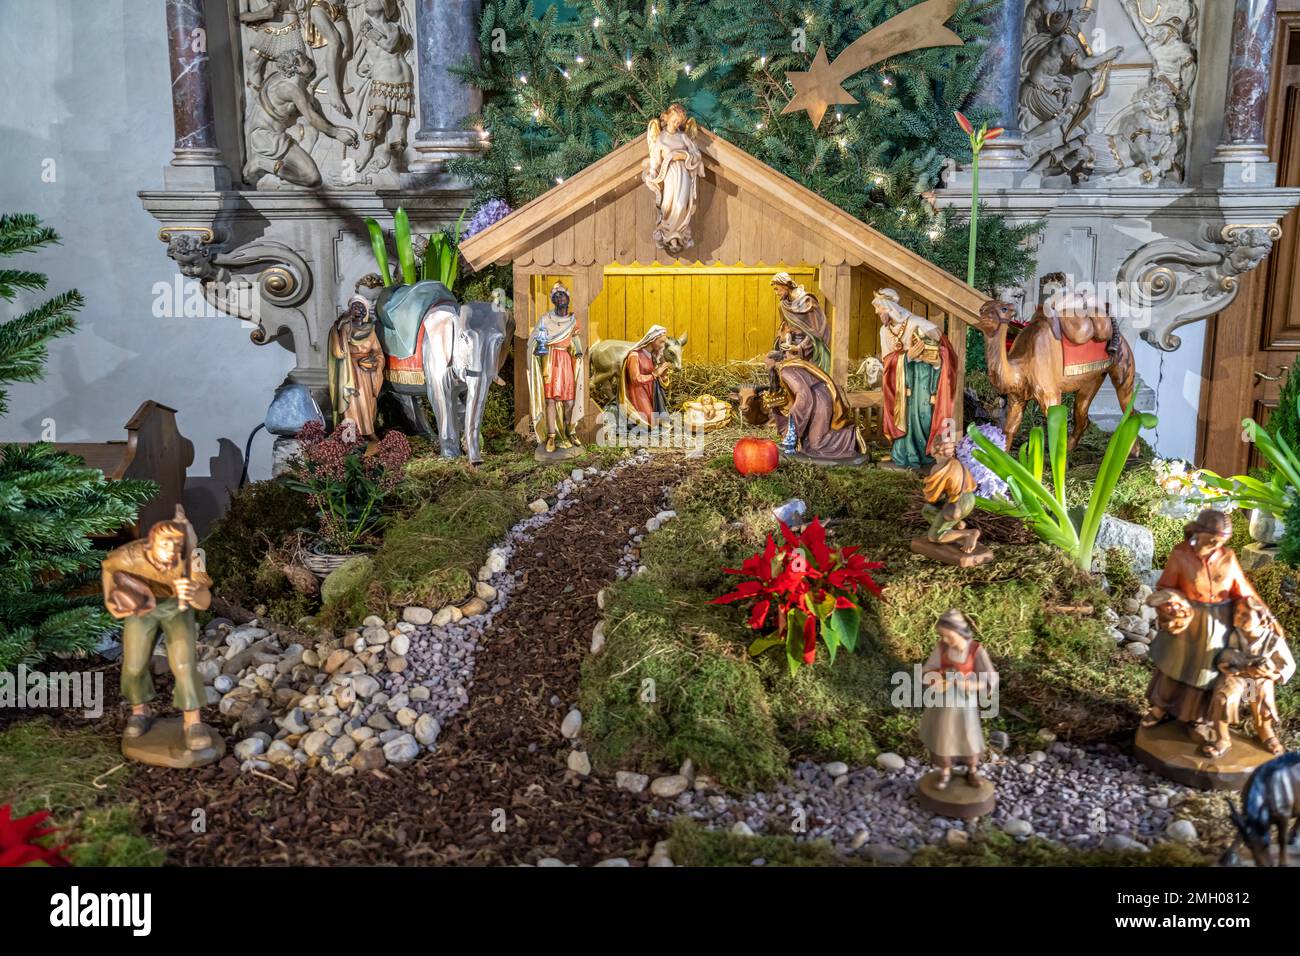 Weihnachtskrippe im Innenraum der Klosterkirche des Kloster Oelinghausen, Arnsberg, Hochsauerlandkreis, Nordrhein-Westfalen  |  Christmas Nativity sce Stock Photo